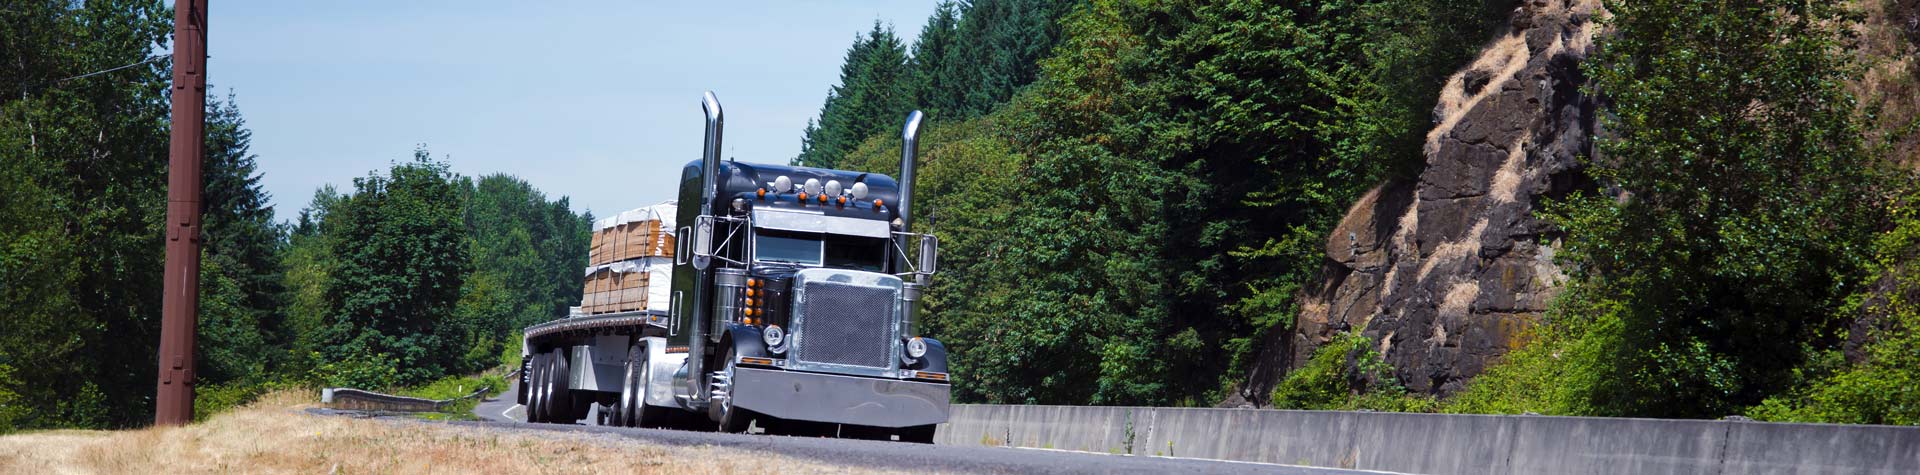 Semi-Truck Heavy-Duty Towing